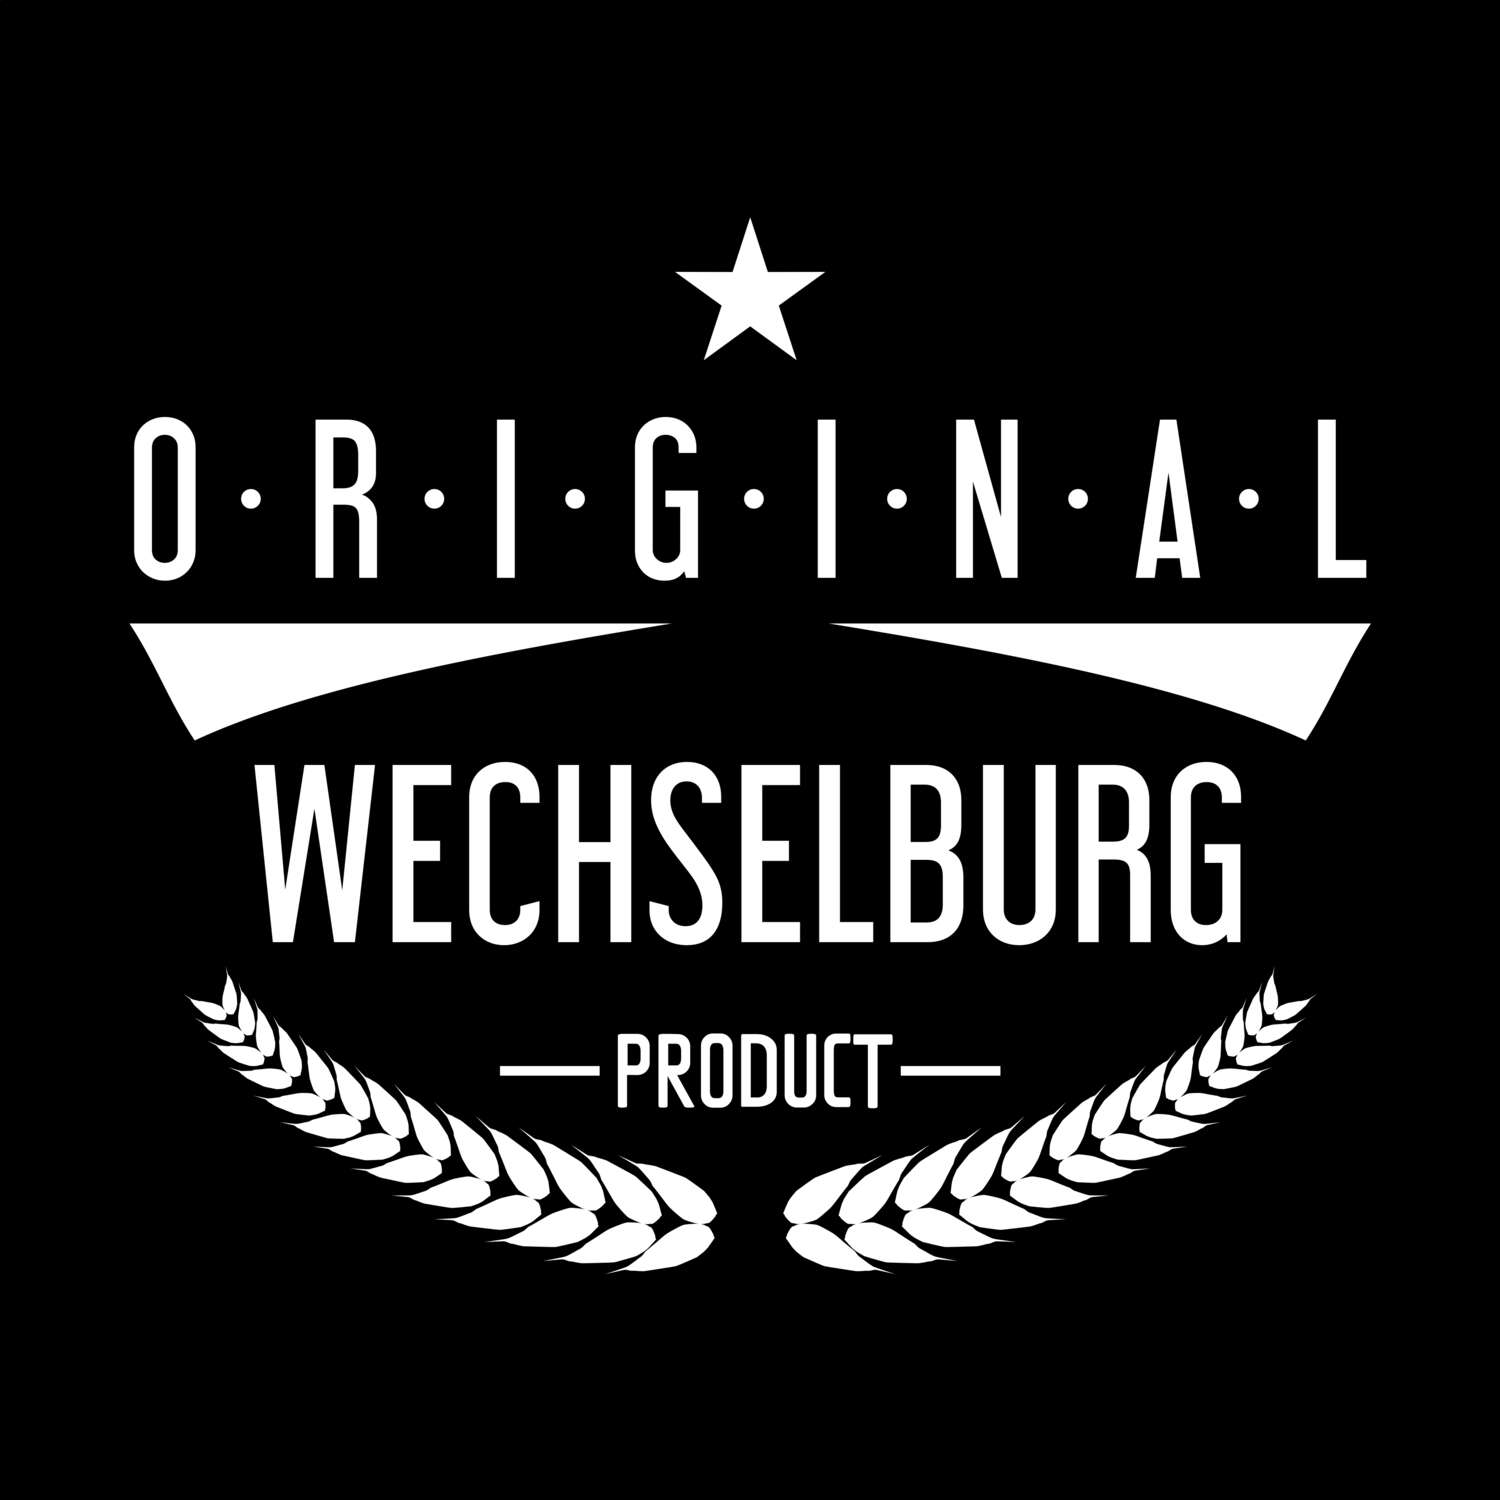 Wechselburg T-Shirt »Original Product«